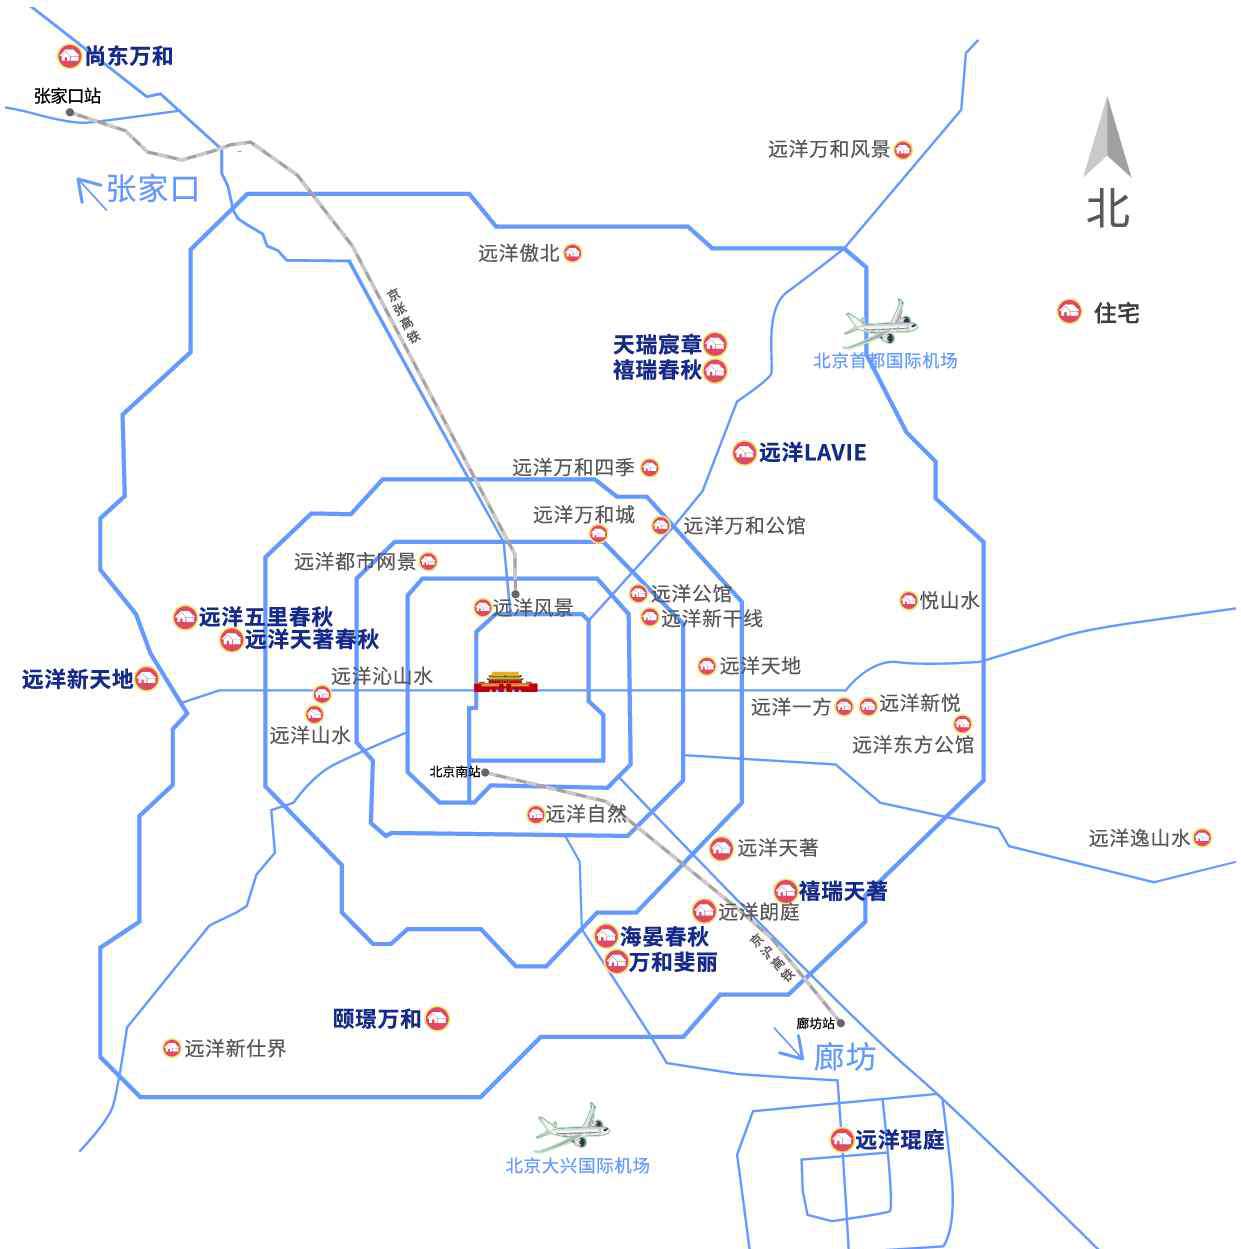 远洋集团 远洋集团北京开发事业部成立 以京为核高质深耕